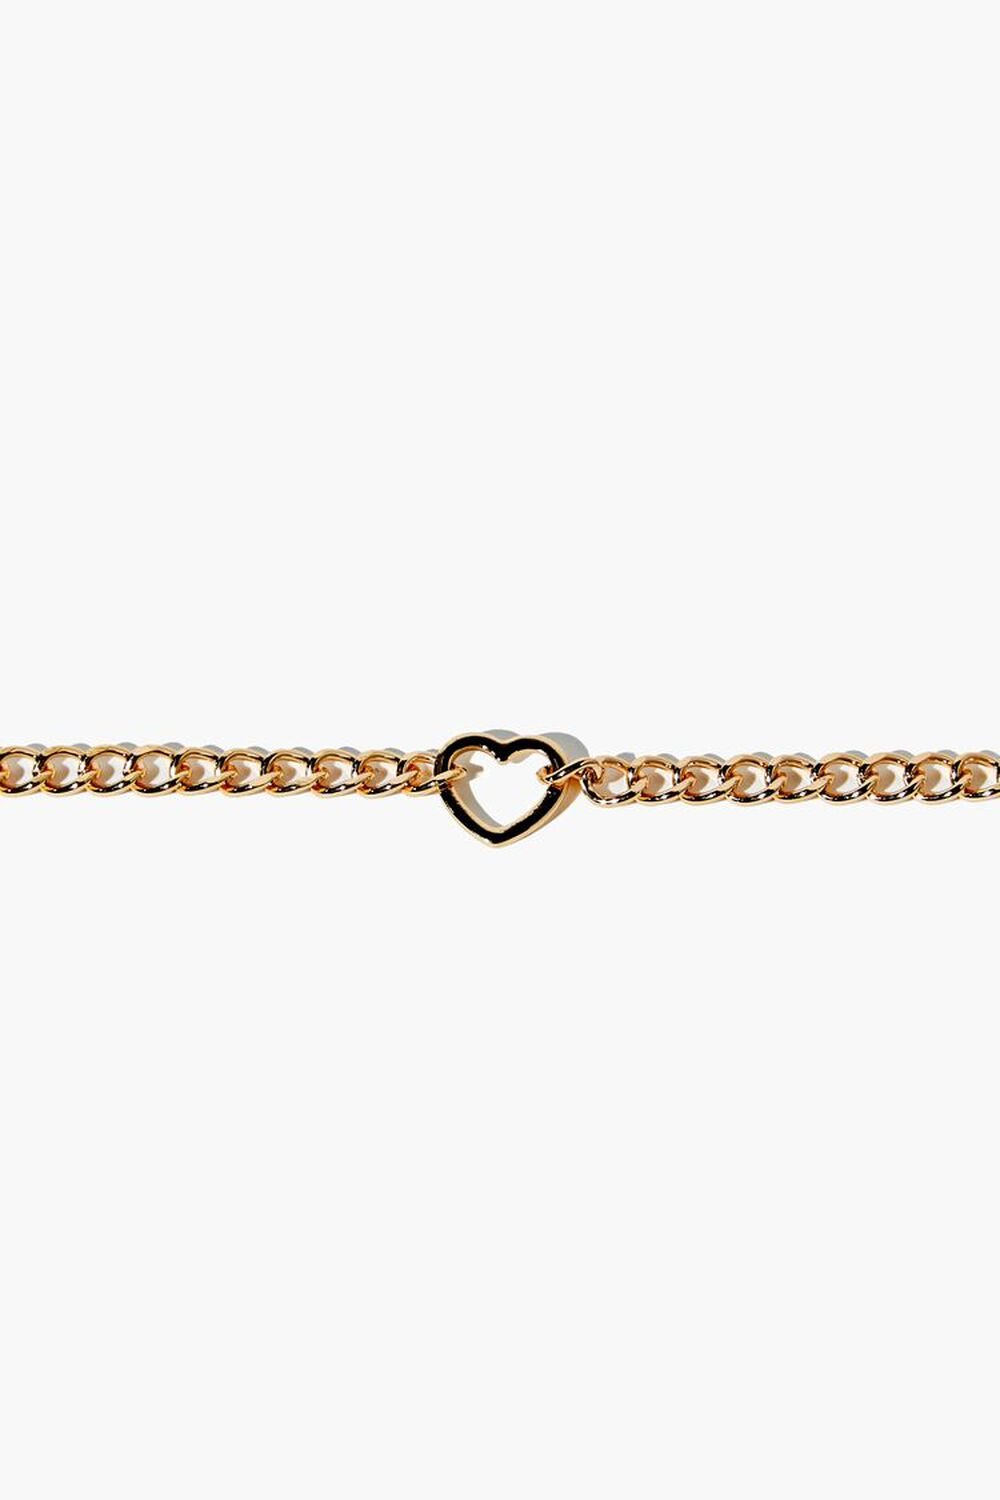 GOLD Cutout Heart Bracelet, image 1